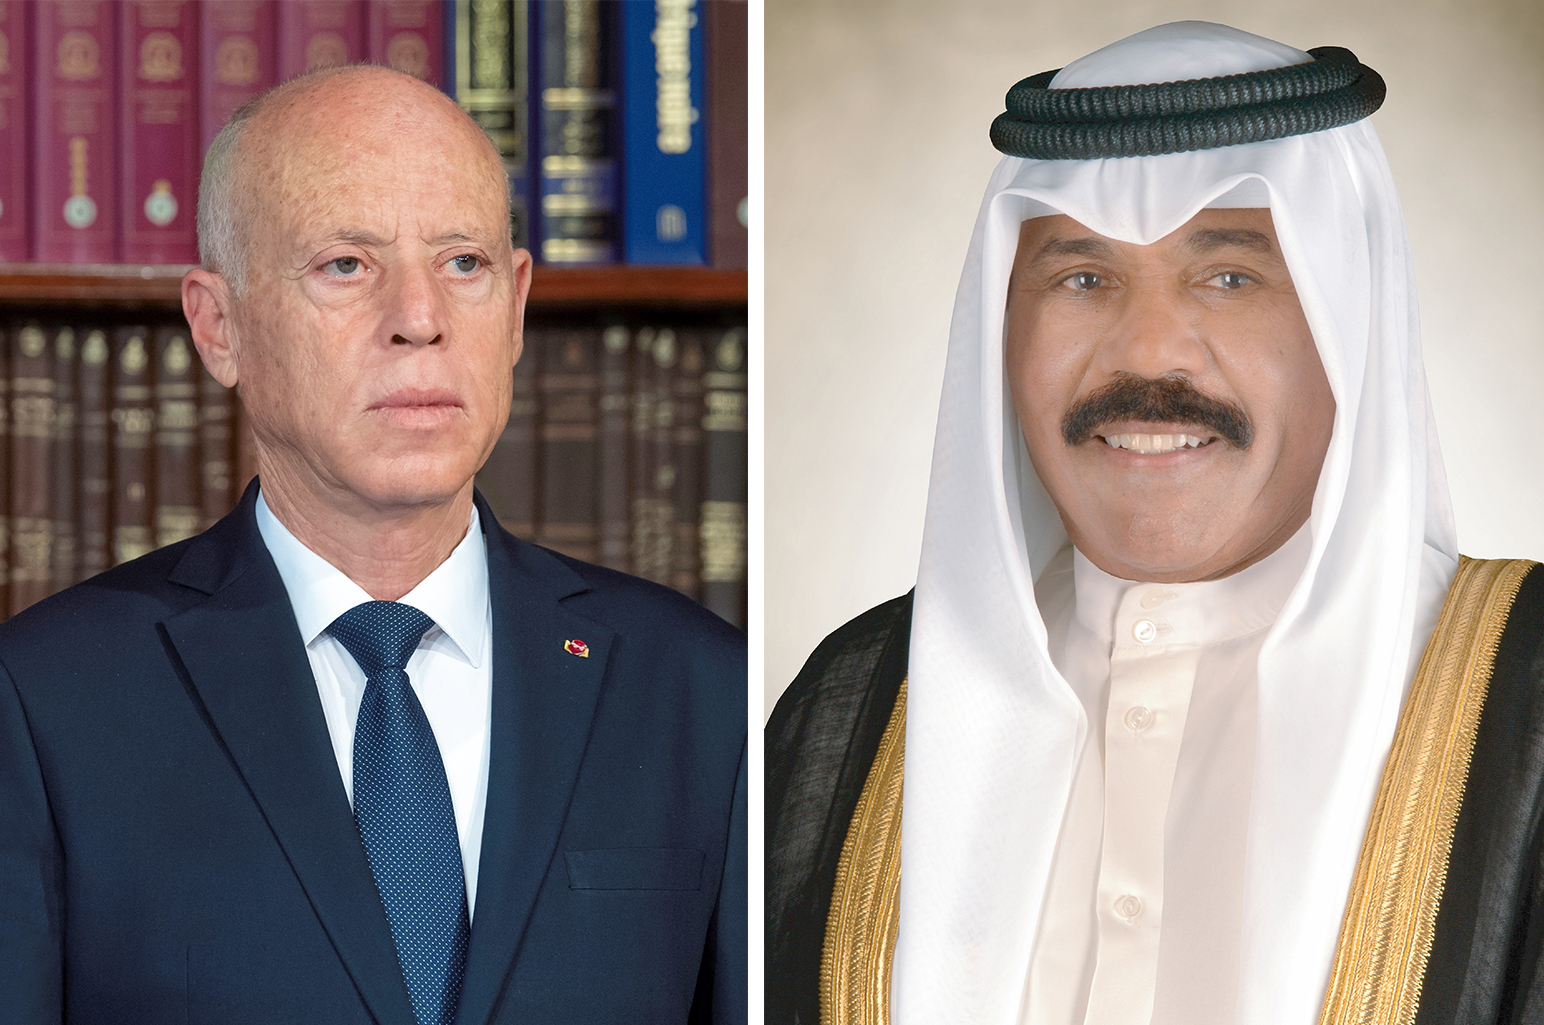 His Highness the Amir Sheikh Nawaf Al-Ahmad Al-Jaber Al-Sabah and Tunisian President Kais Saied